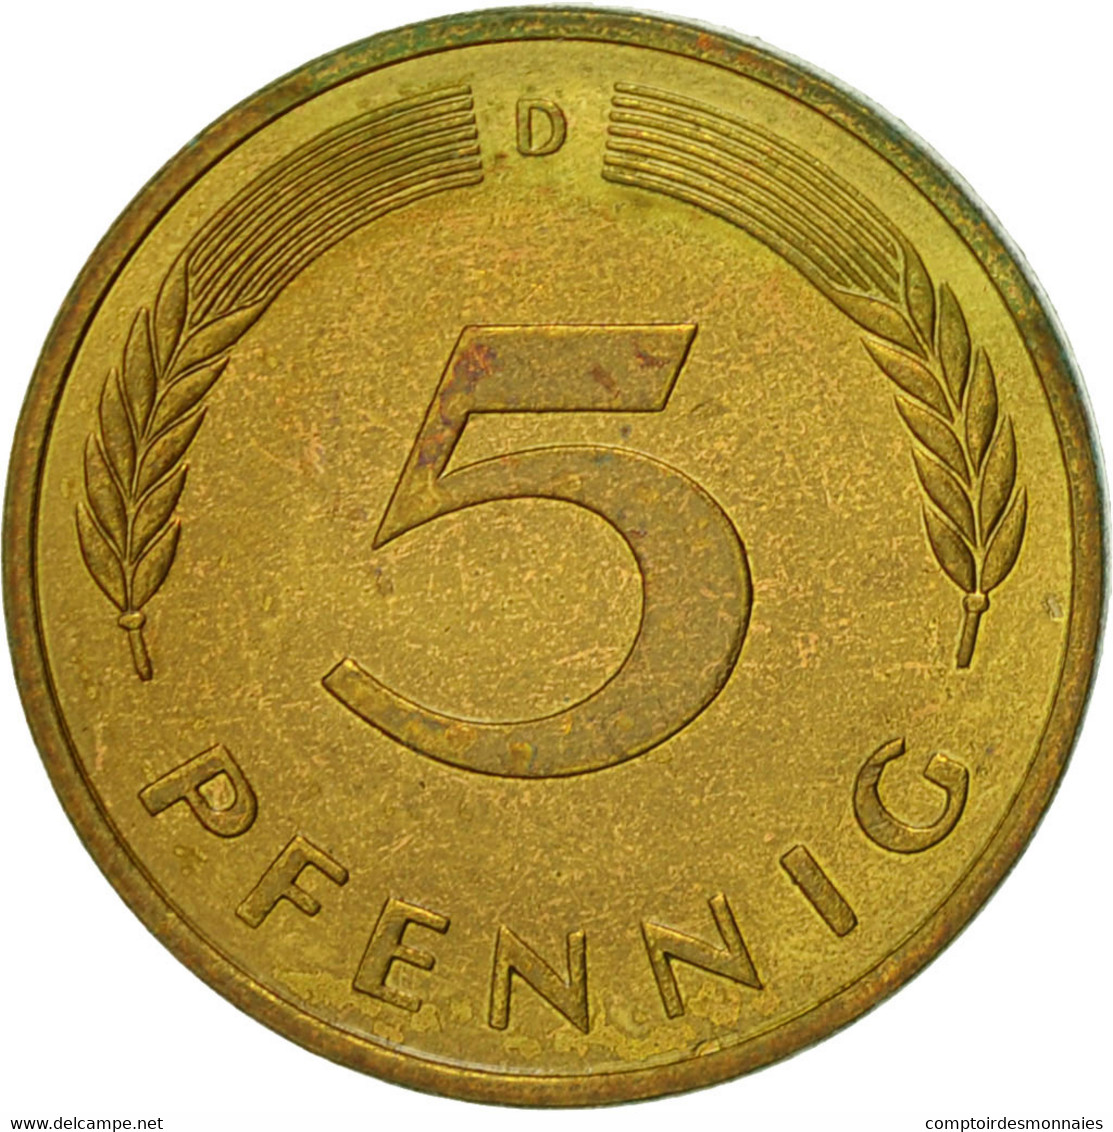 Monnaie, République Fédérale Allemande, 5 Pfennig, 1984, Munich, TTB, Brass - 5 Pfennig